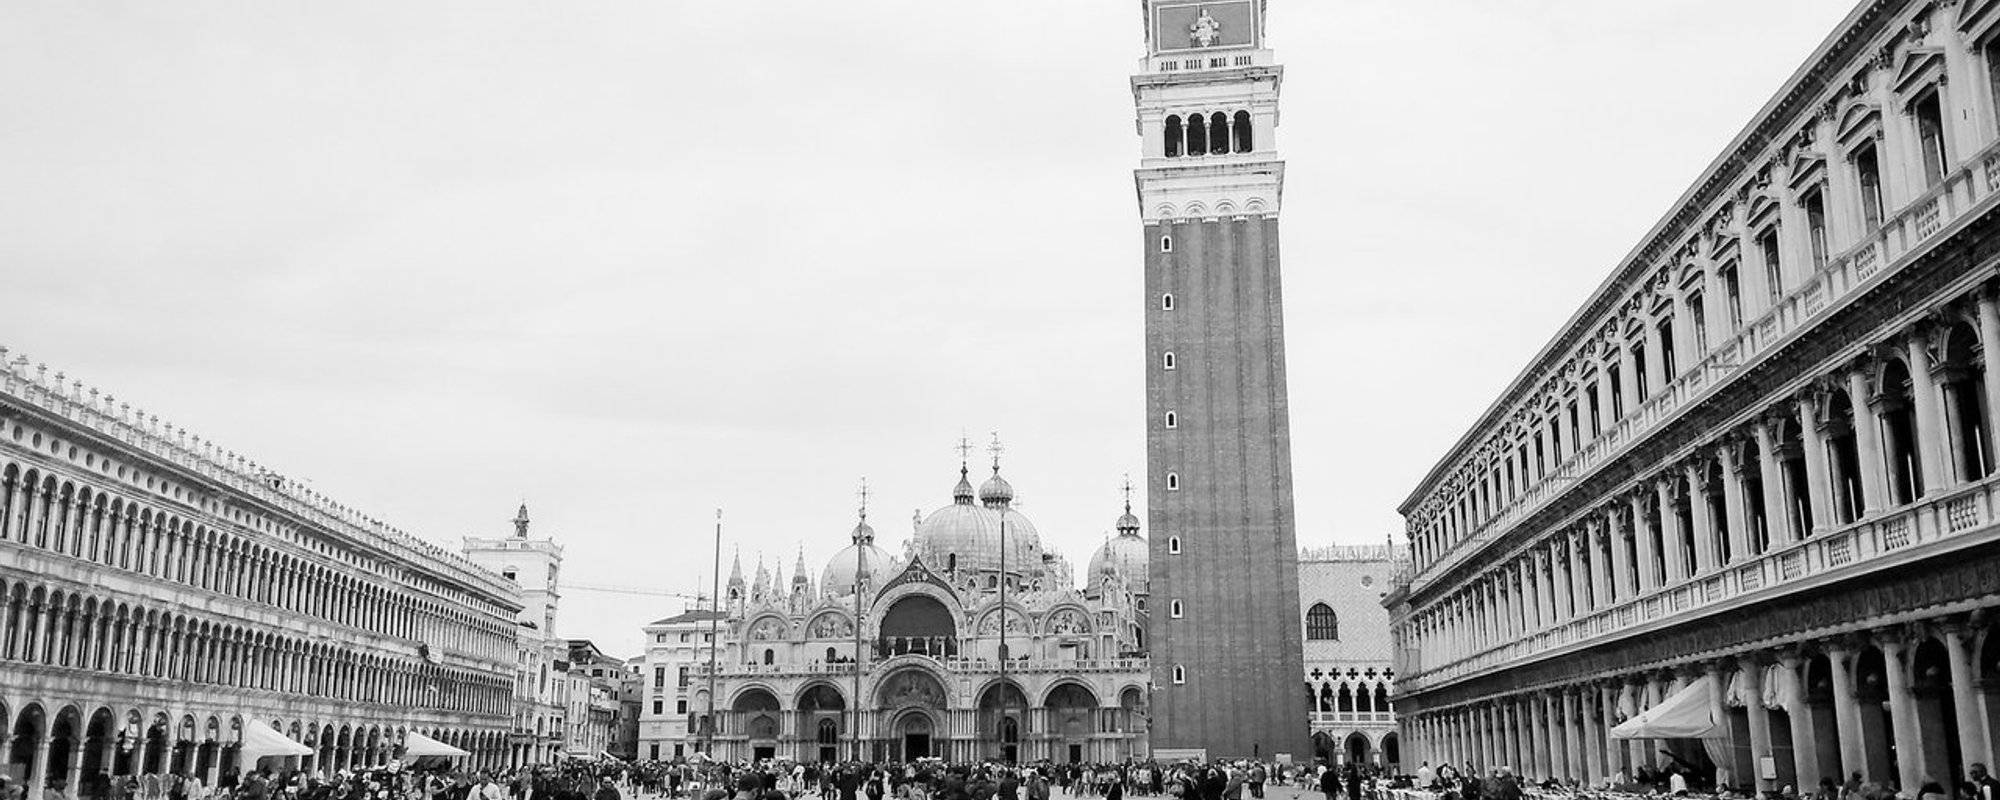 Share My World: Venice, Italy: Part 2